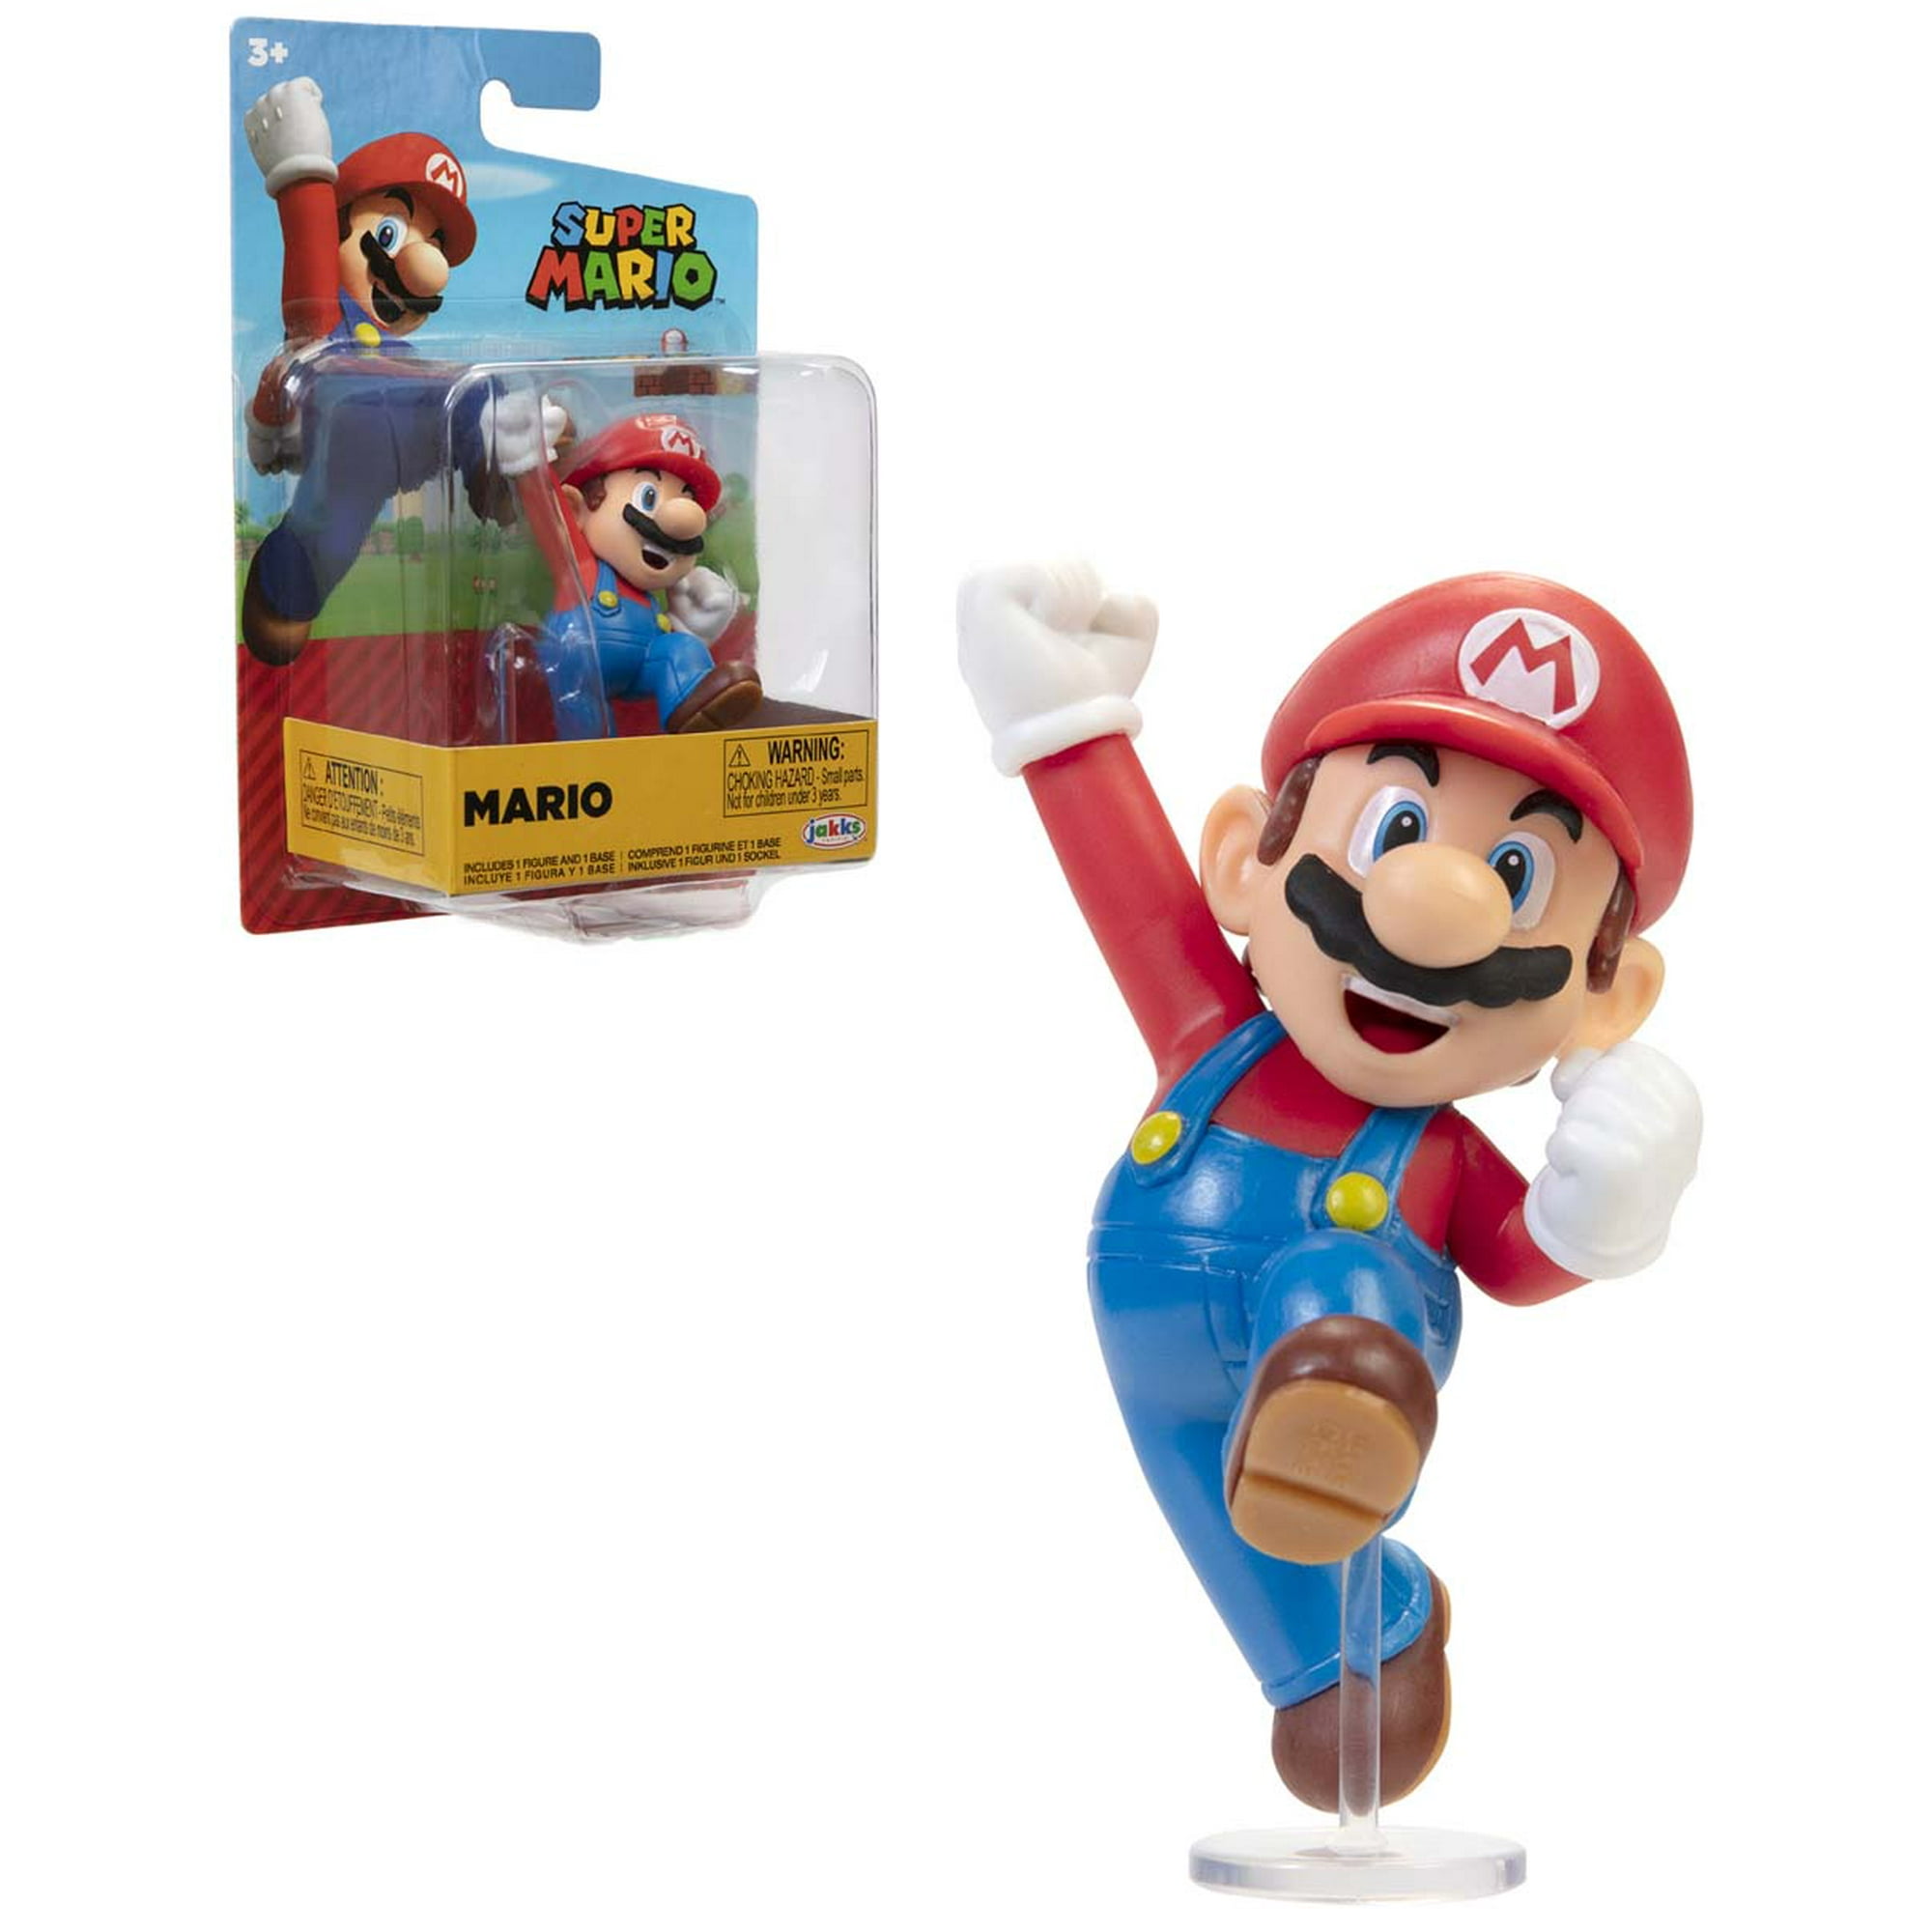 Super Mario Bros. Wonder + Peluche Super Mario 22cm